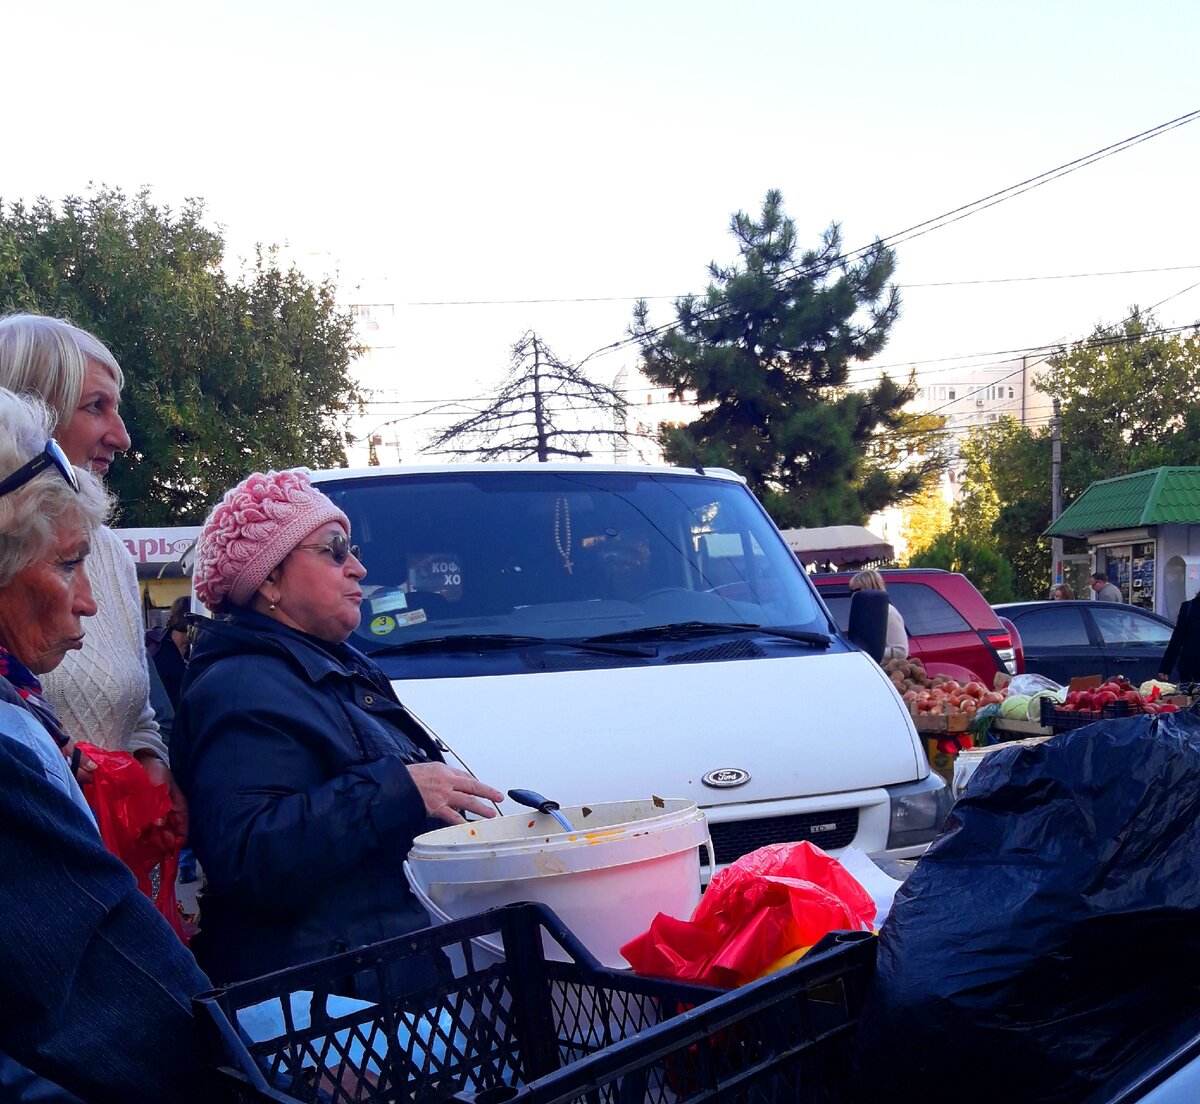 Разговорилась на рынке с местной жительницей и узнала, как живут люди в Севастополе (Крым),речь про зарплату и жилье